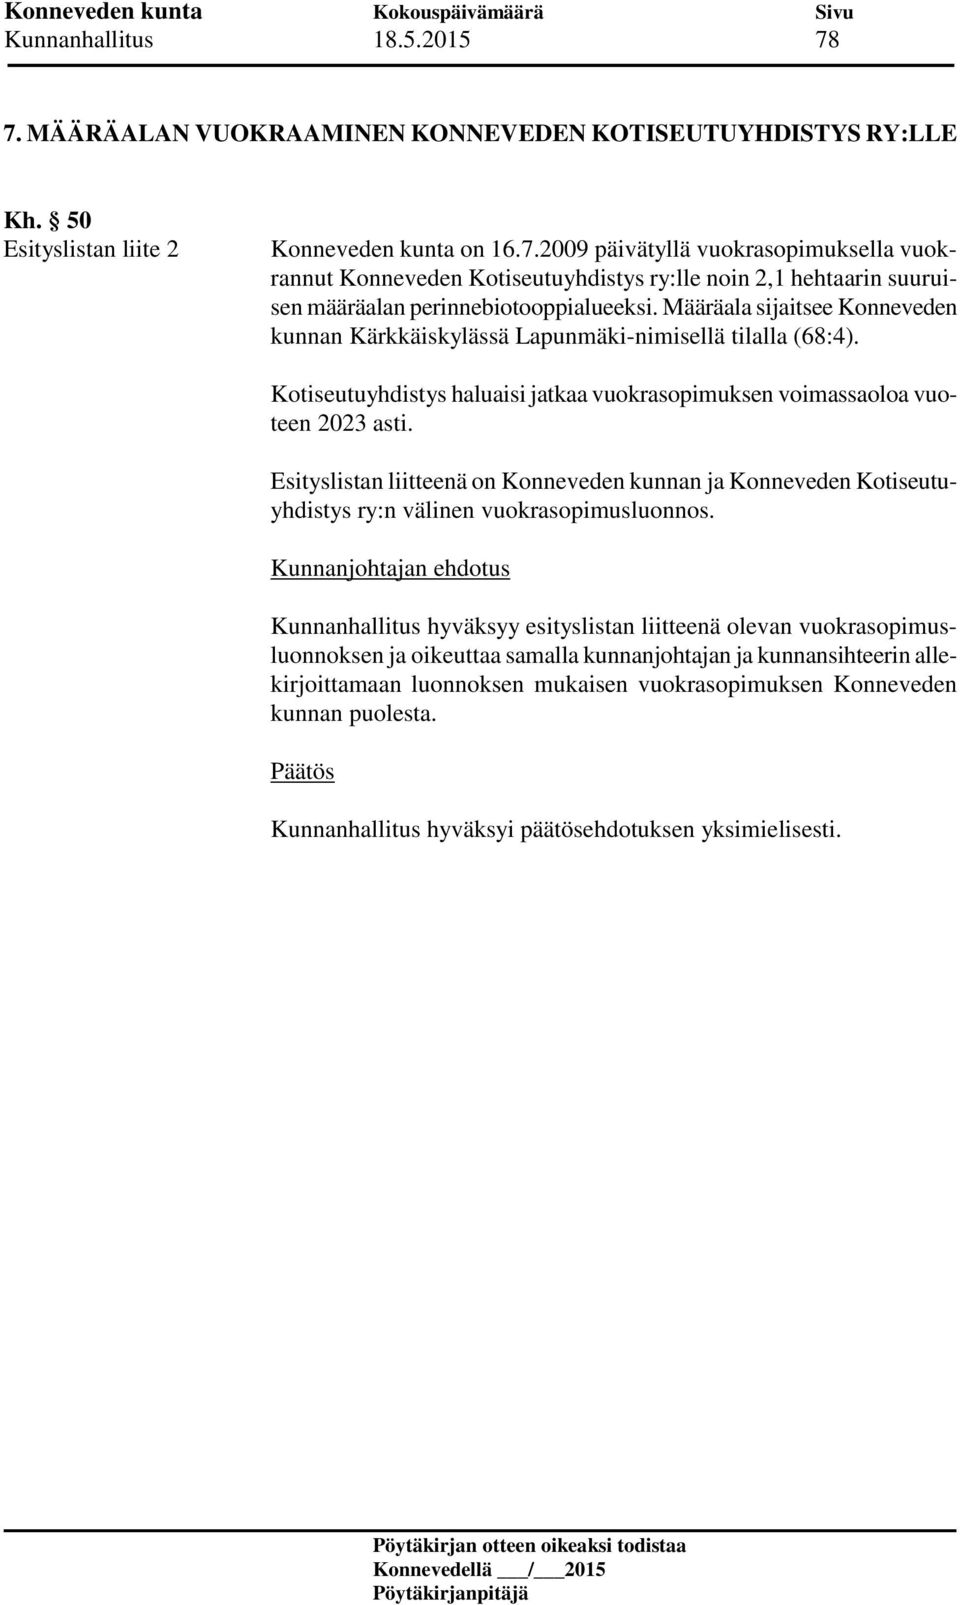 Esityslistan liitteenä on Konneveden kunnan ja Konneveden Kotiseutuyhdistys ry:n välinen vuokrasopimusluonnos.